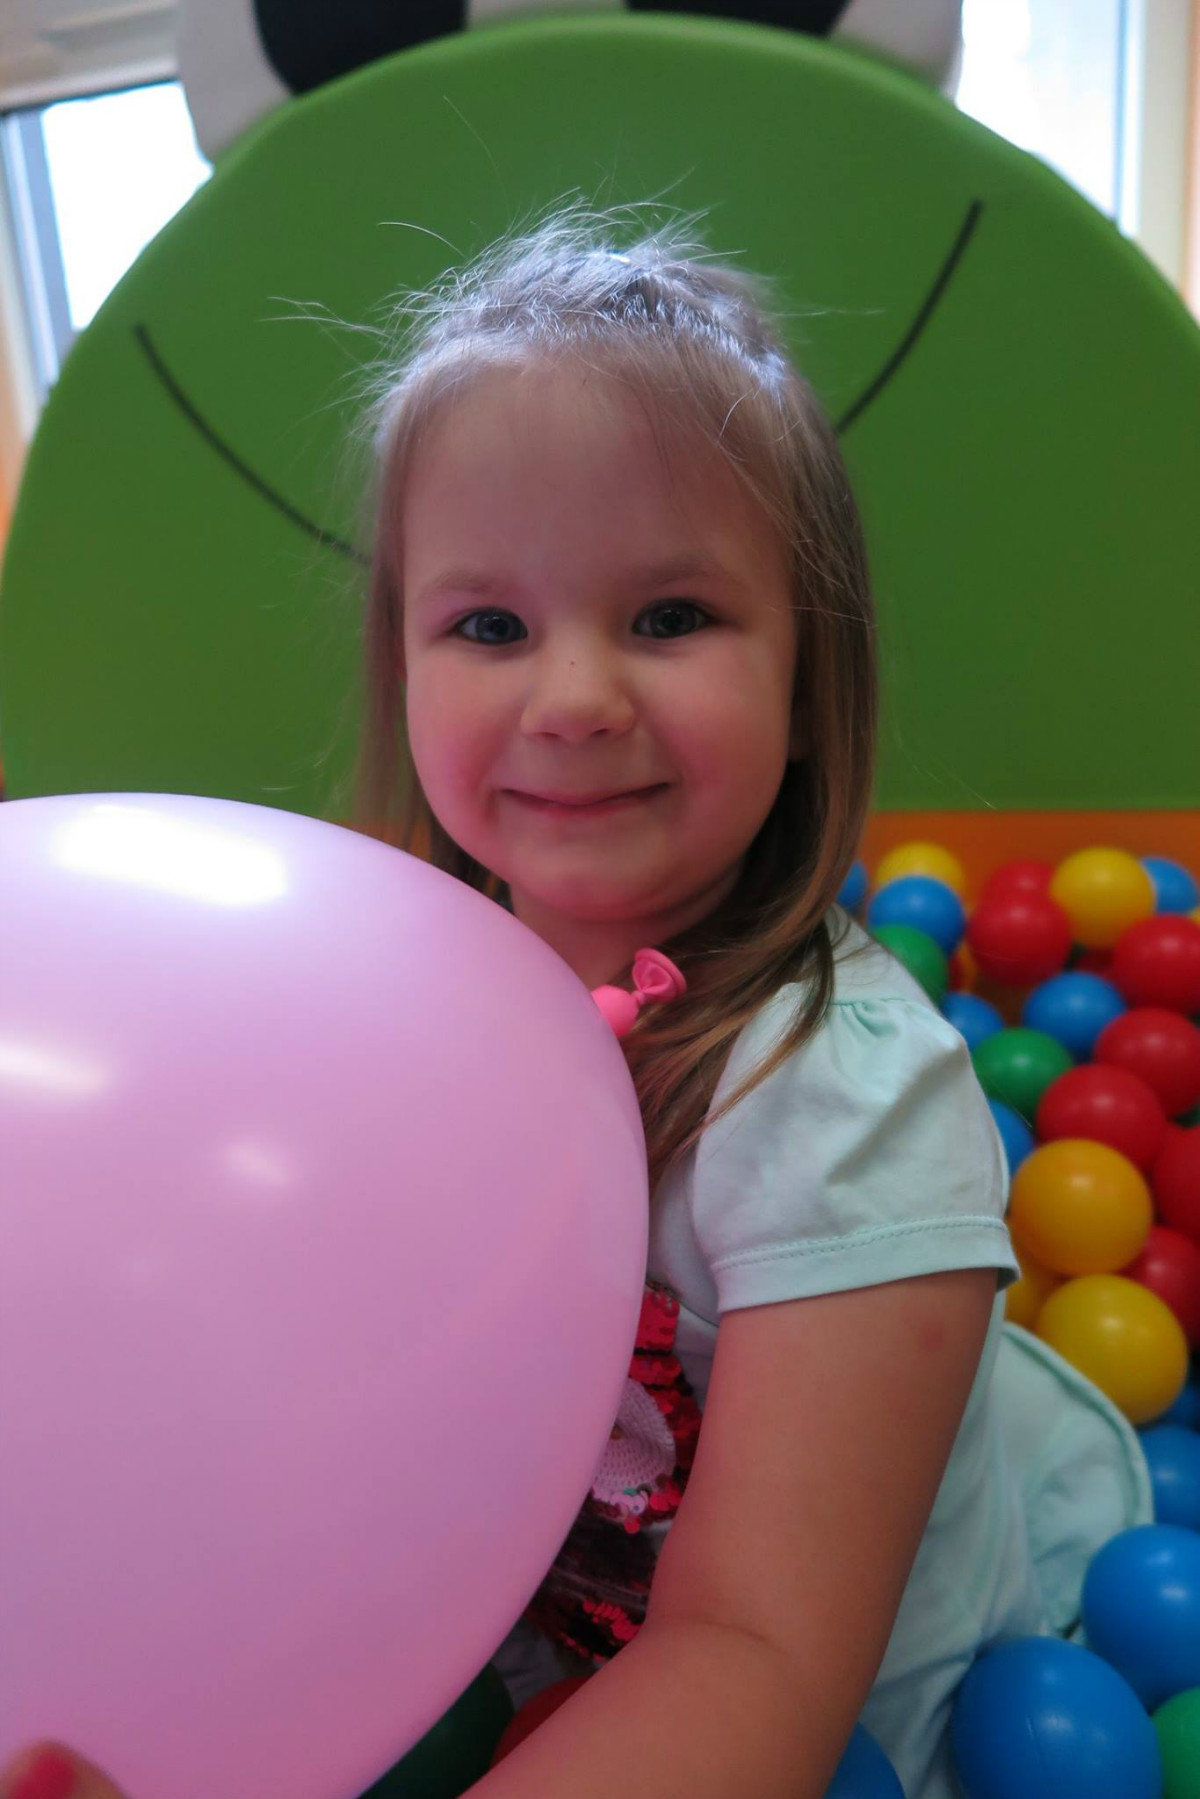 W basenie z kolorowymi piłeczkami siedzi dziewczynka z balonem.